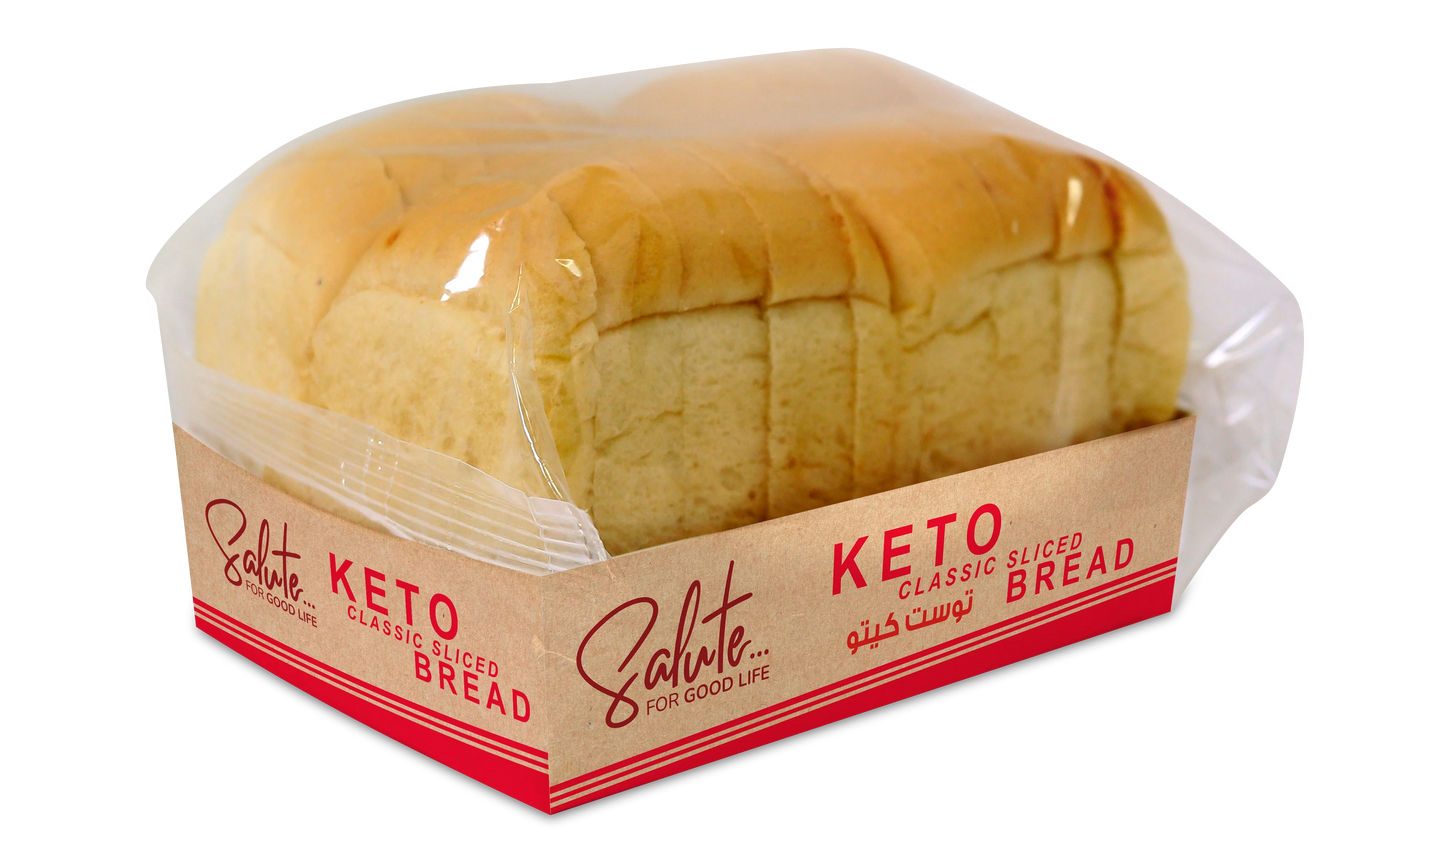 Salute Keto Classic Sliced Bread